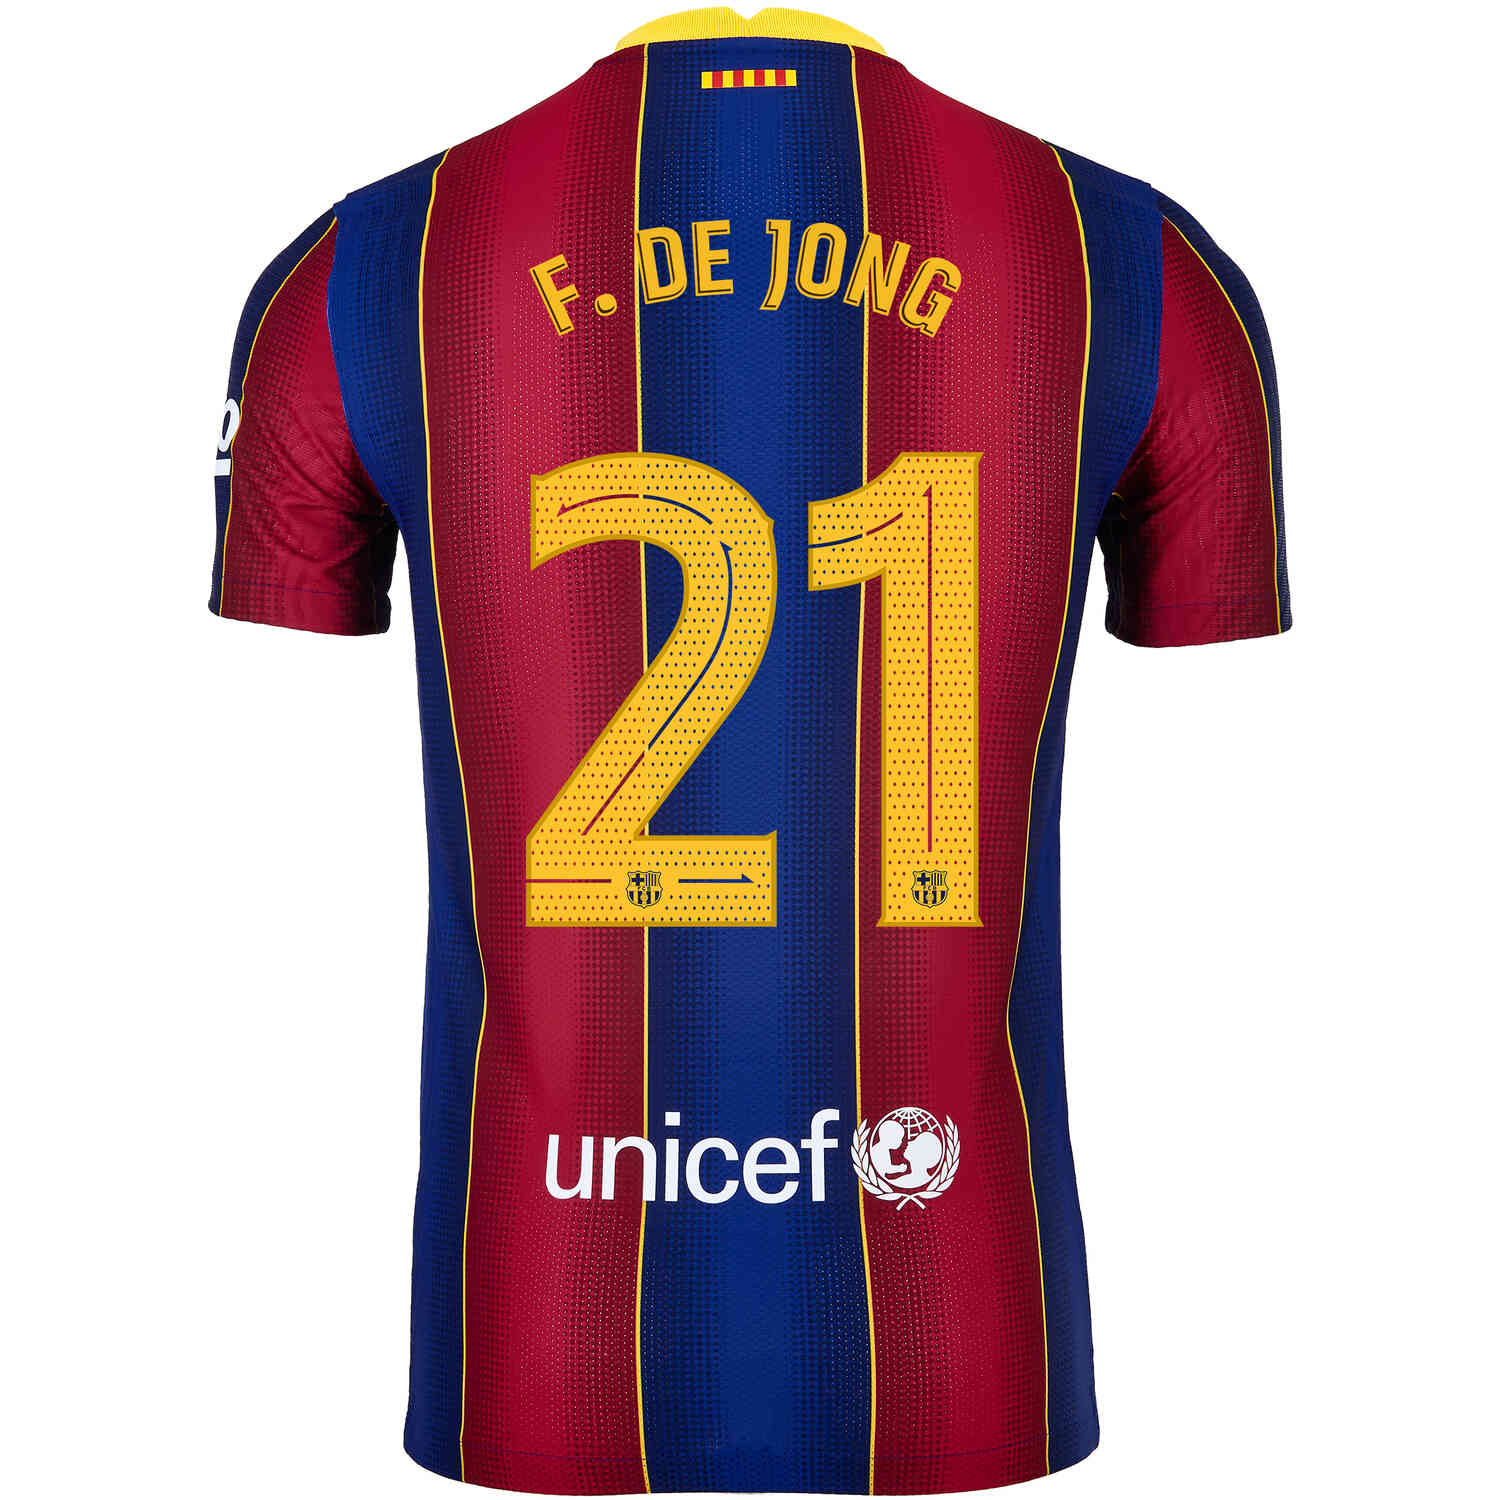 de jong jersey number barcelona